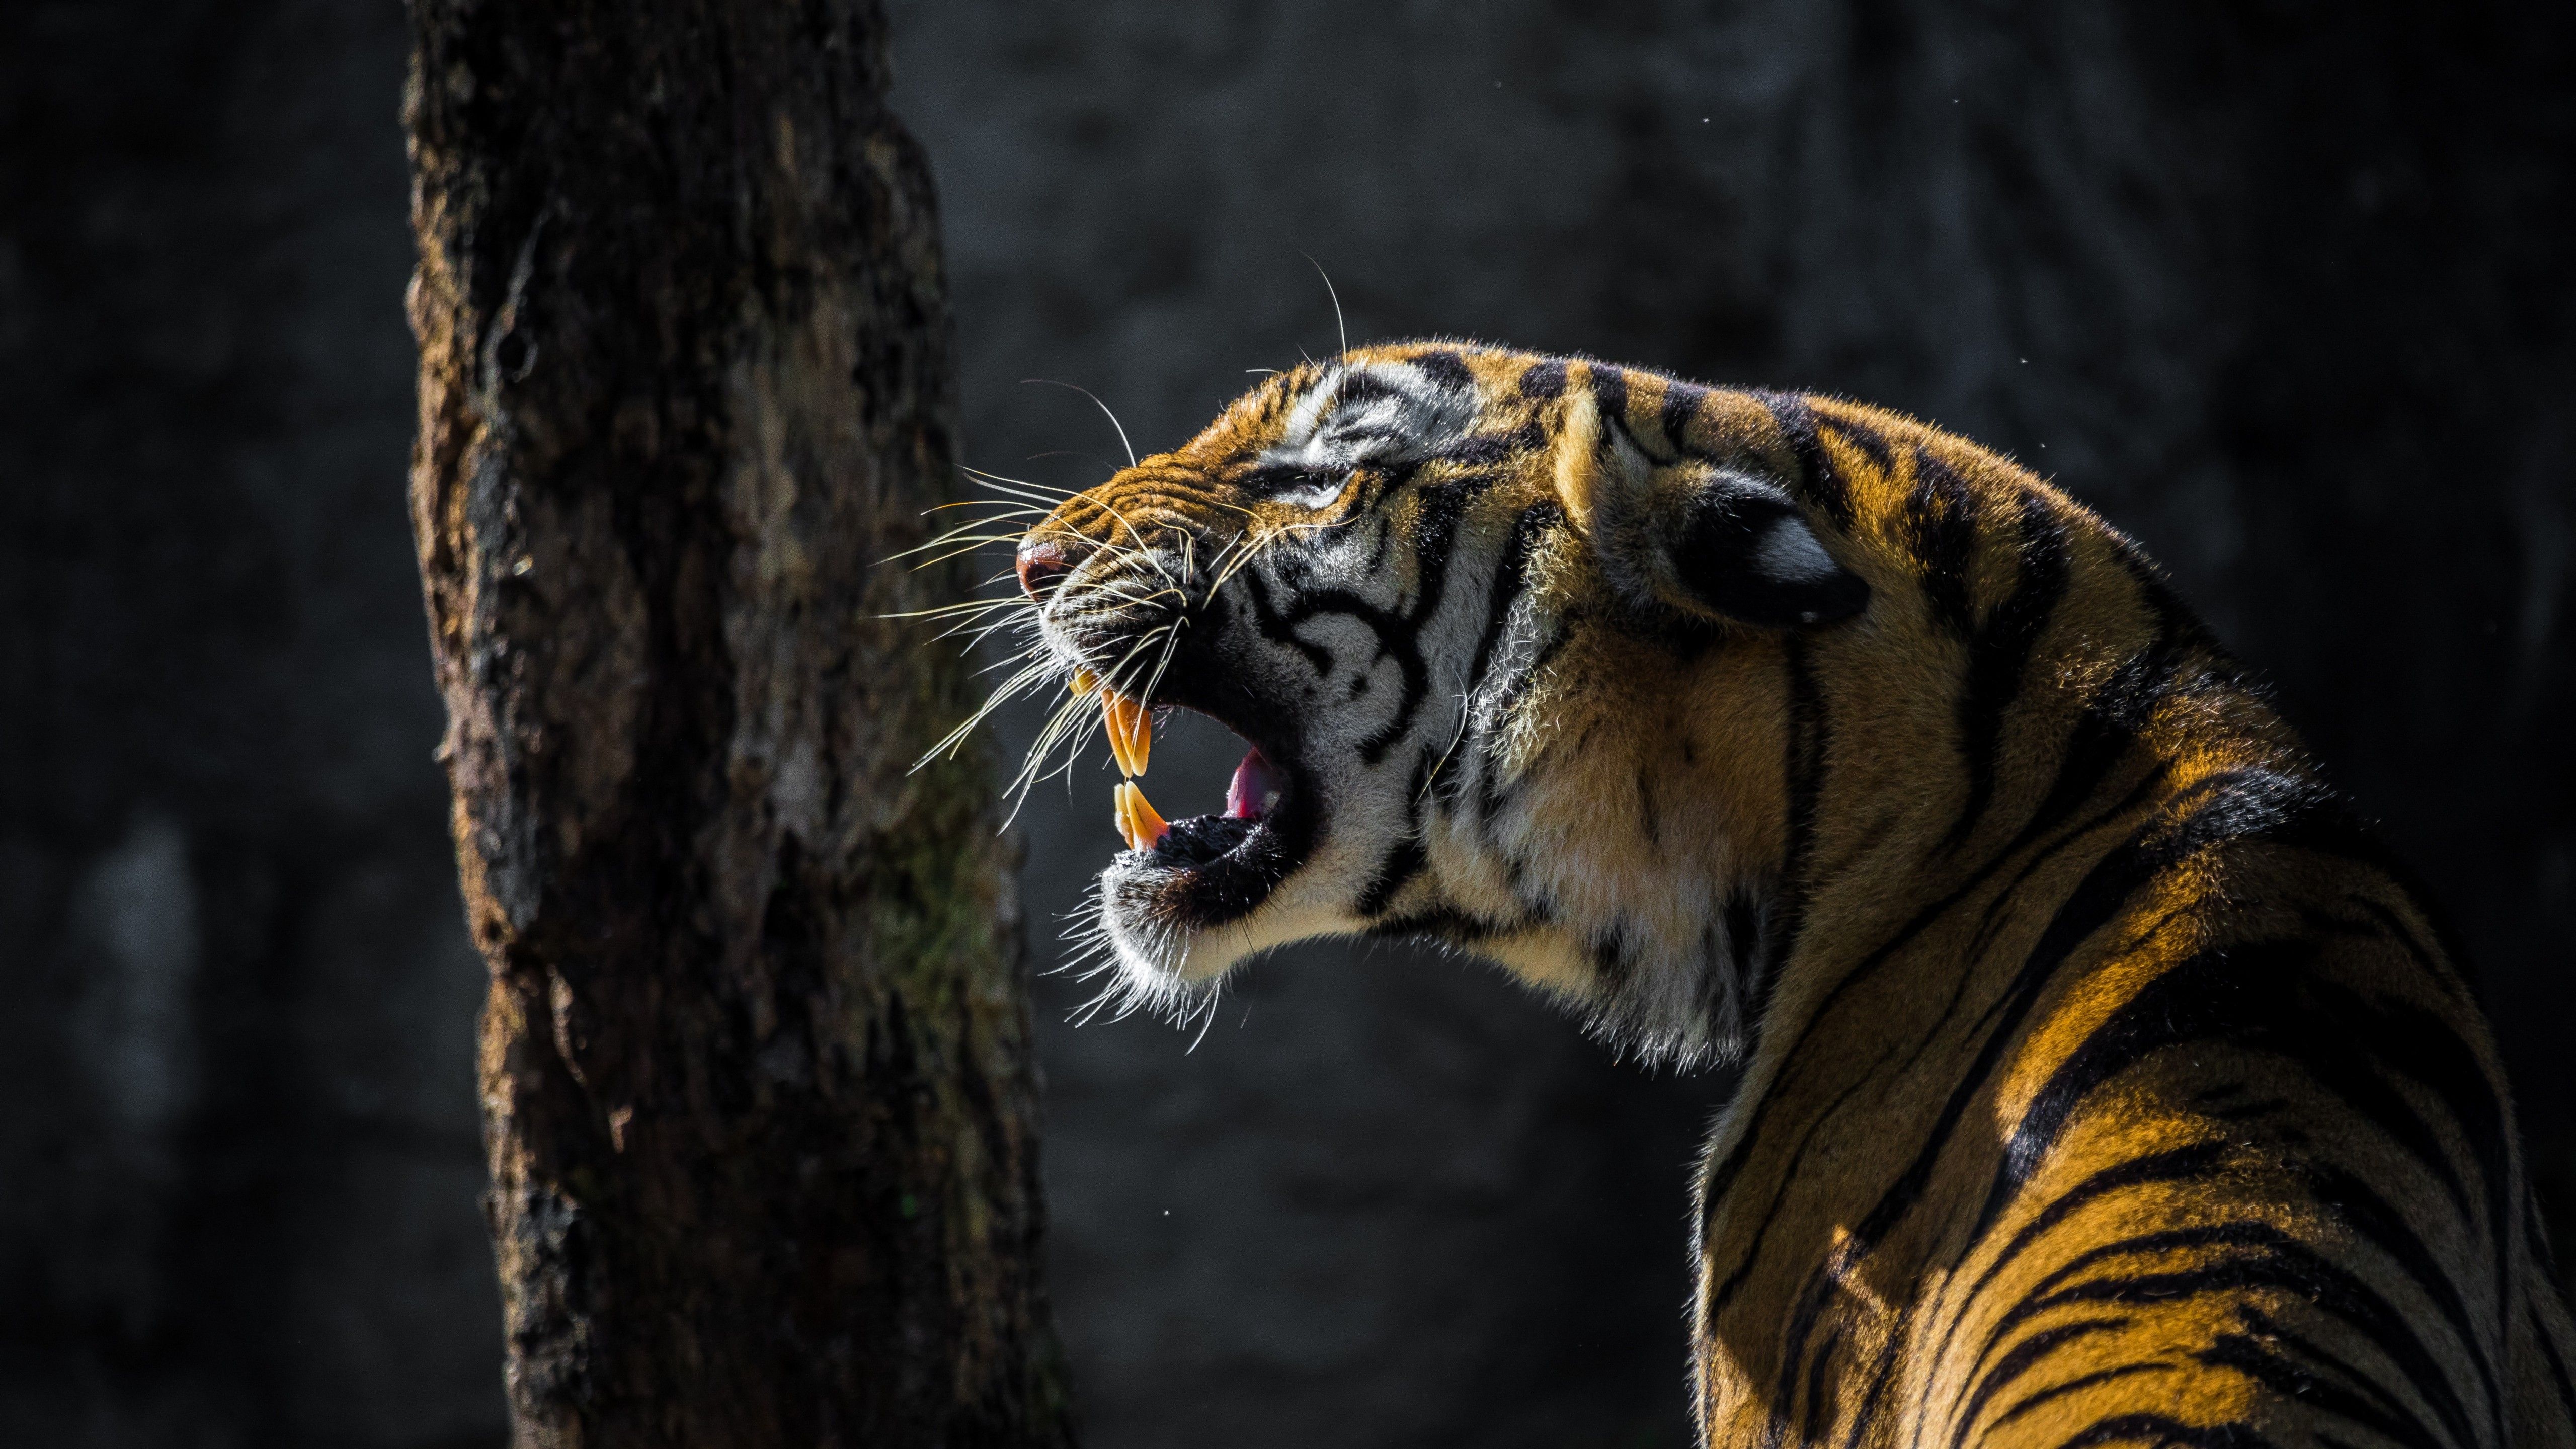 Tiger 4K Wallpaper, Big cat, Roaring, Wildlife, Tree, Forest, Day light, 5K, Animals